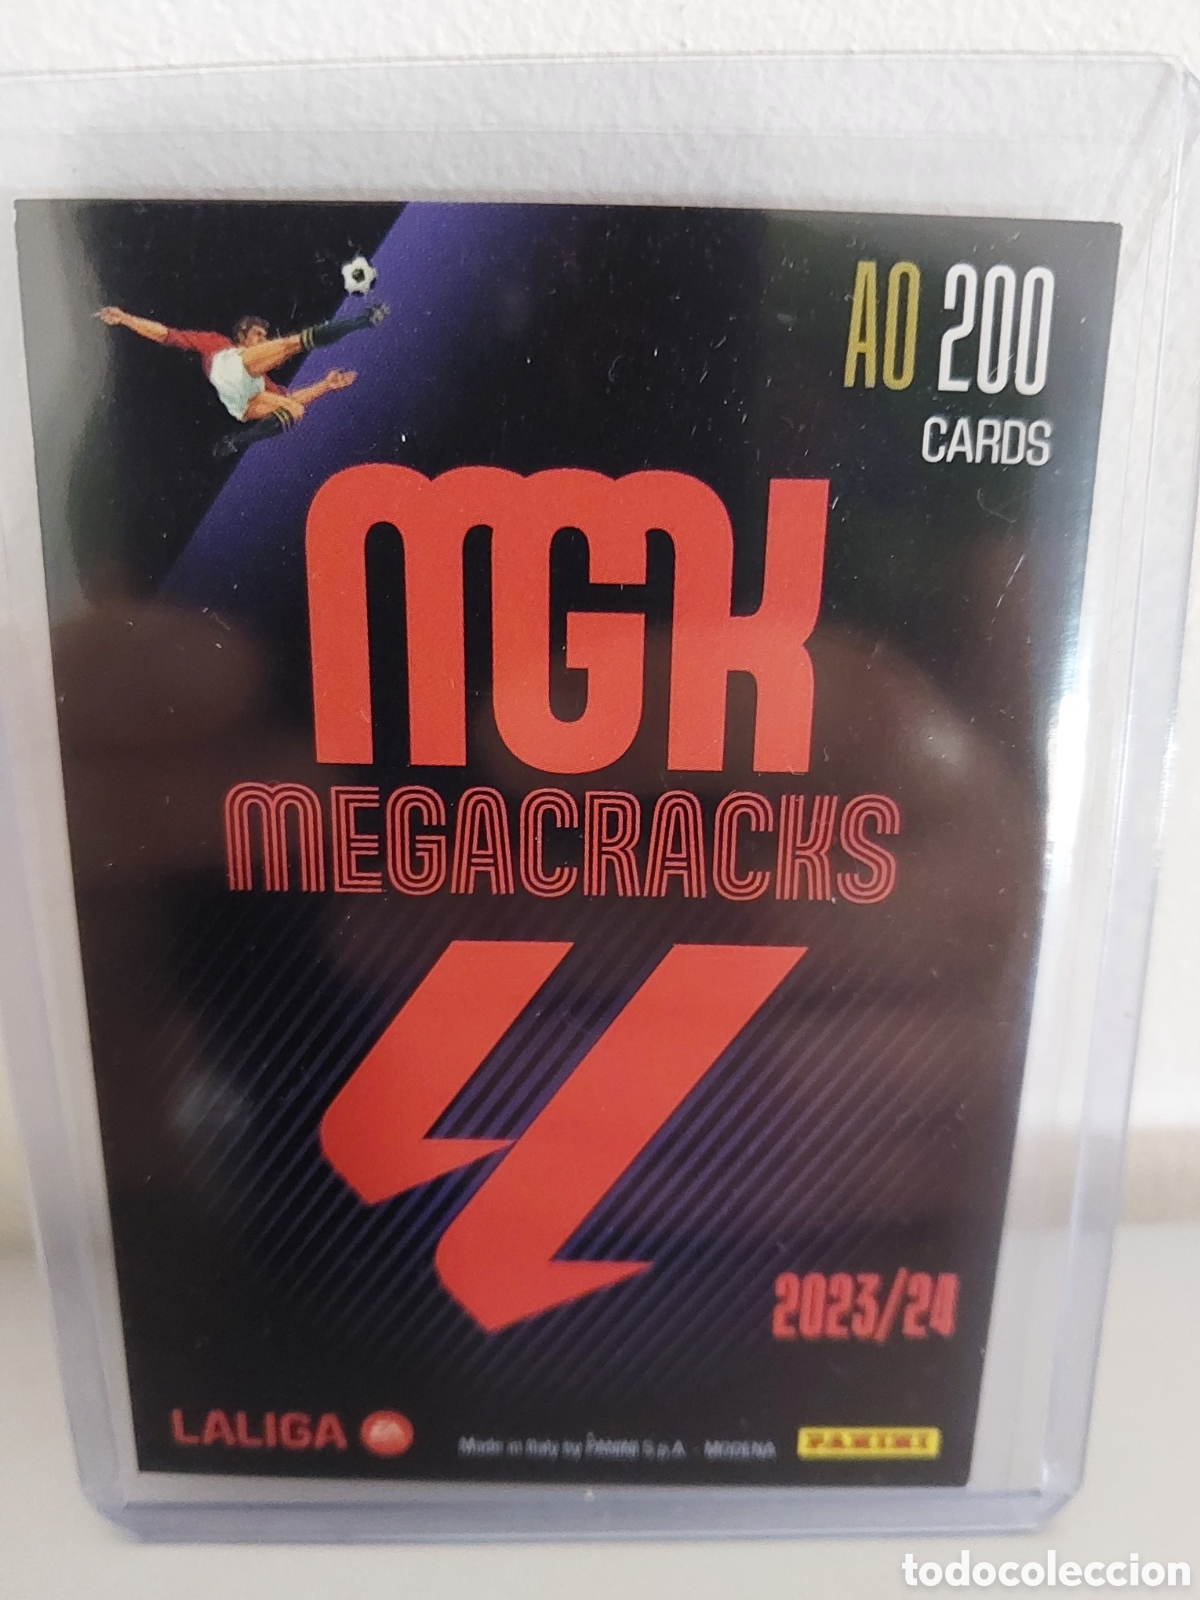 megacracks 2023 2024 23 24 panini 310 bis aithe - Acheter Stickers et cartes  à collectionner de football anciennes sur todocoleccion